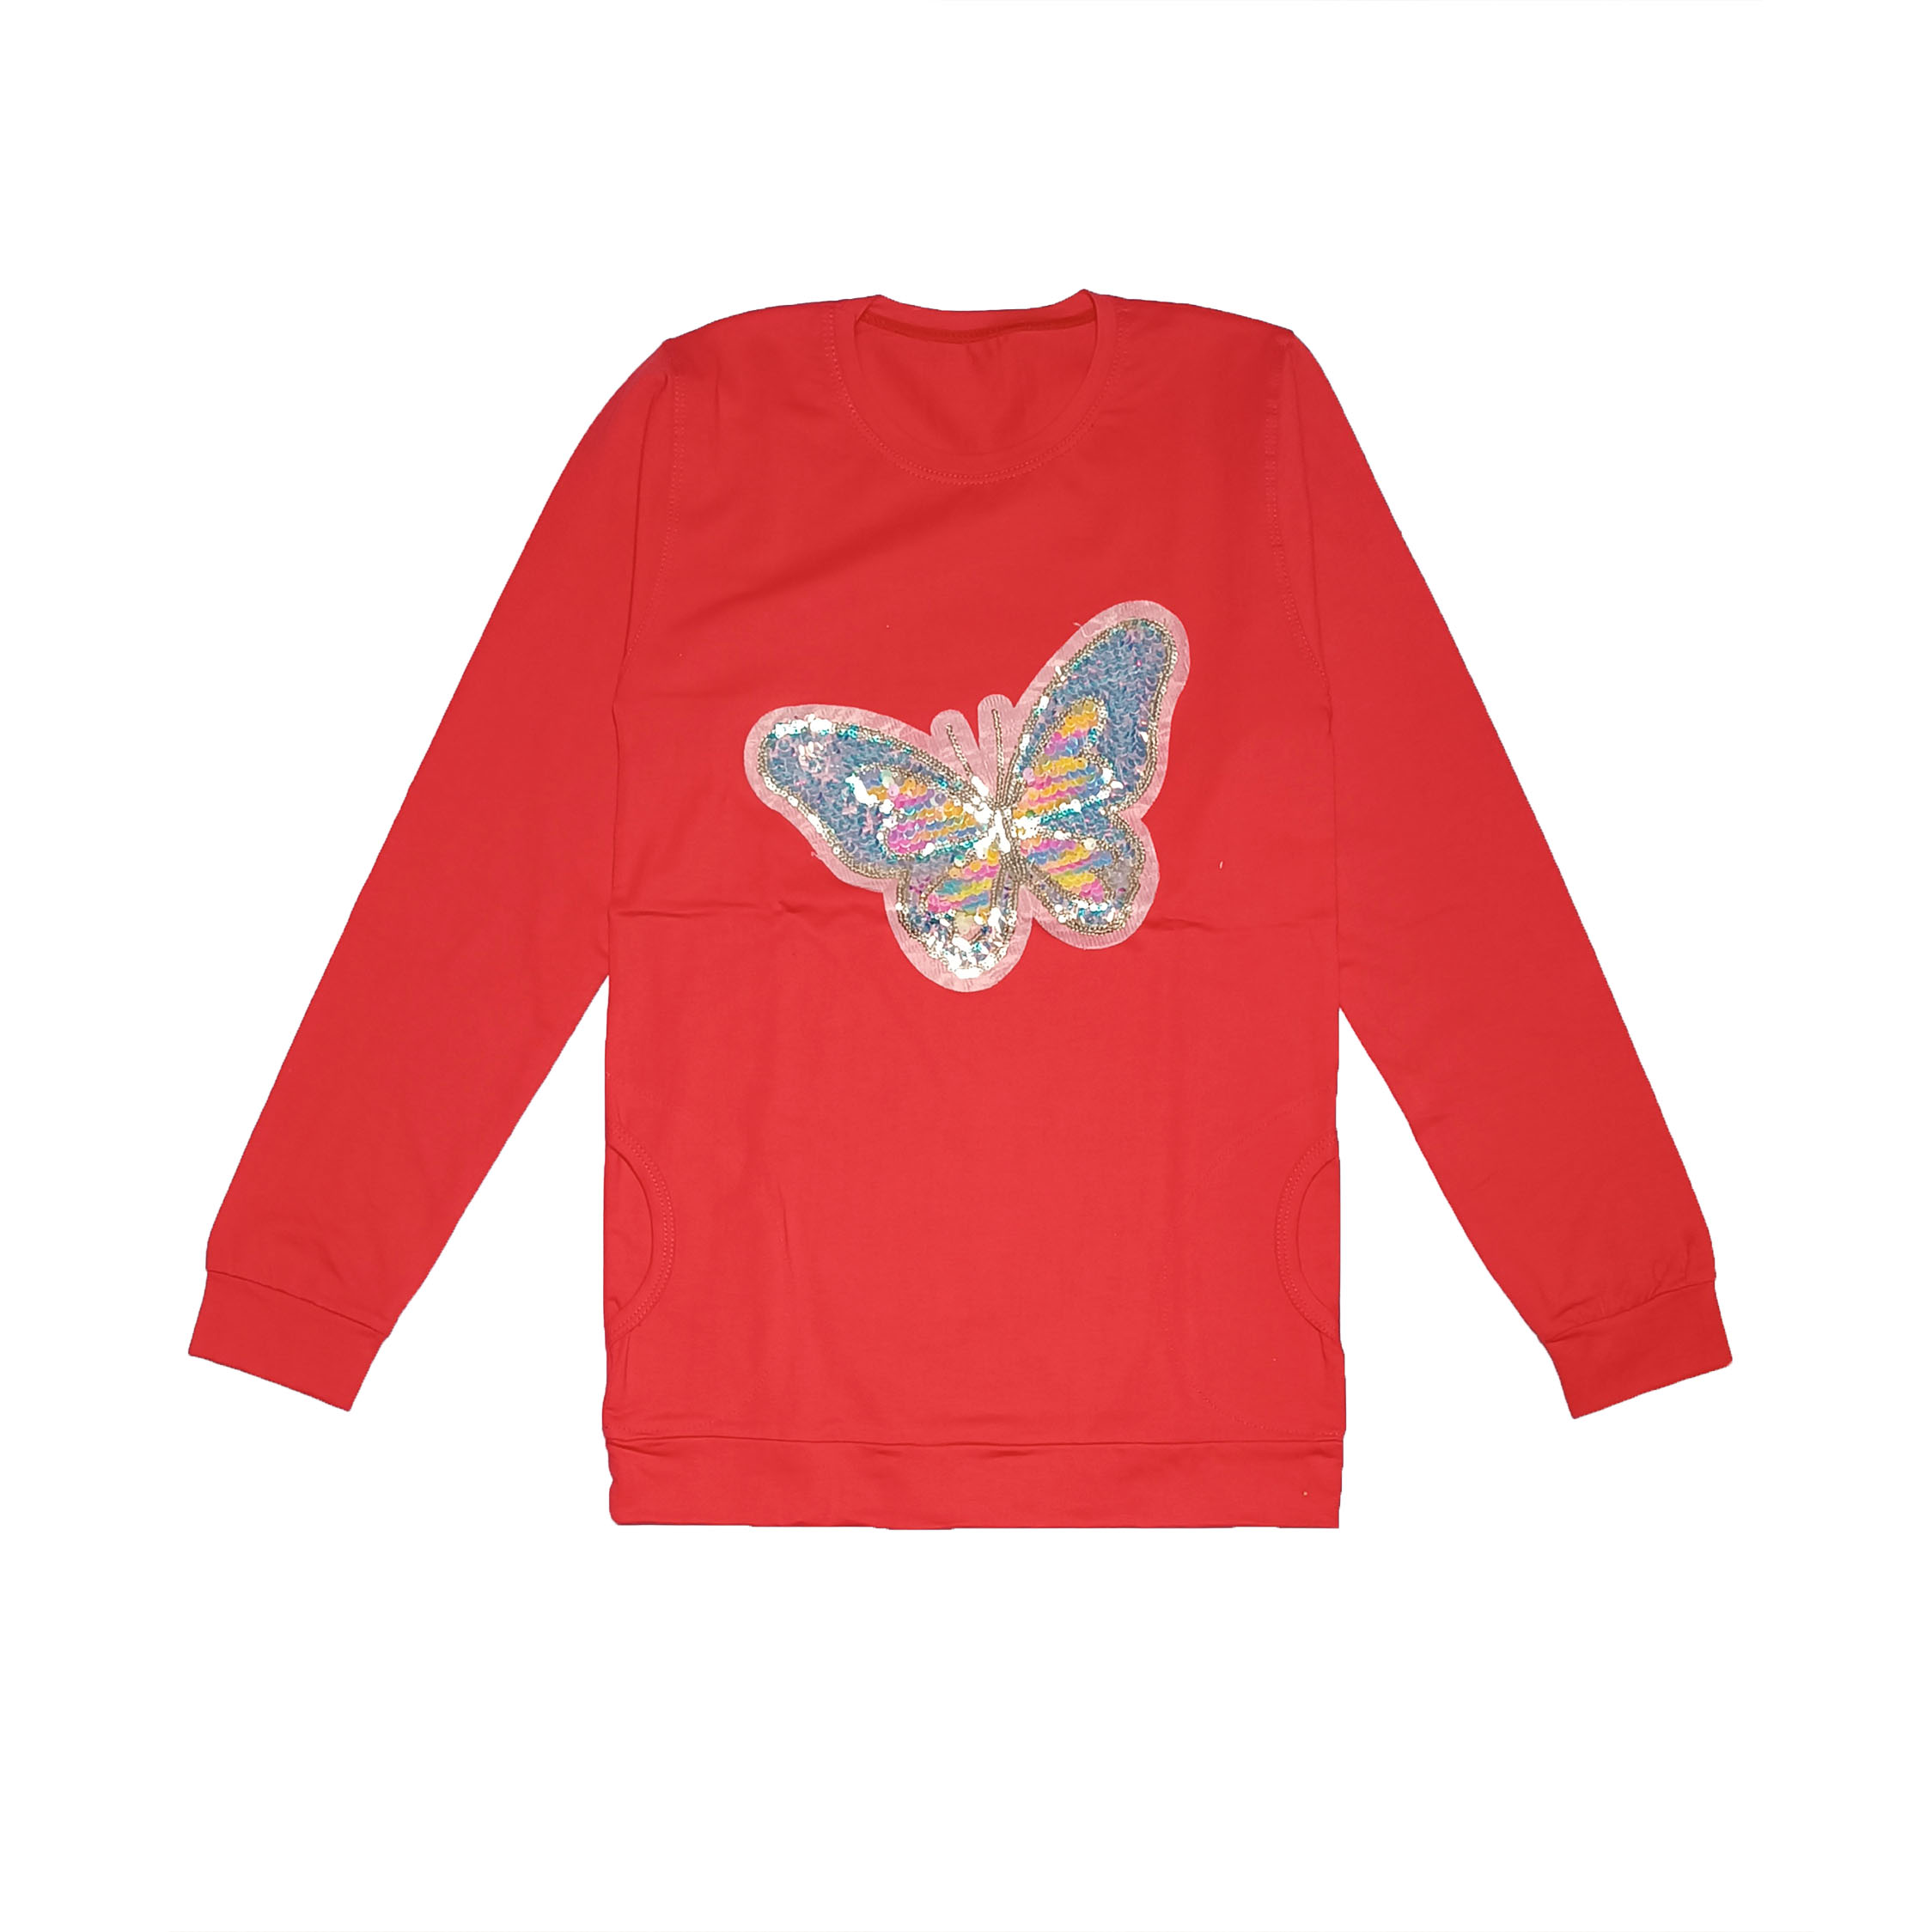 تی شرت آستین بلند دخترانه مدل پروانه پولکی کد 170 رنگ قرمز